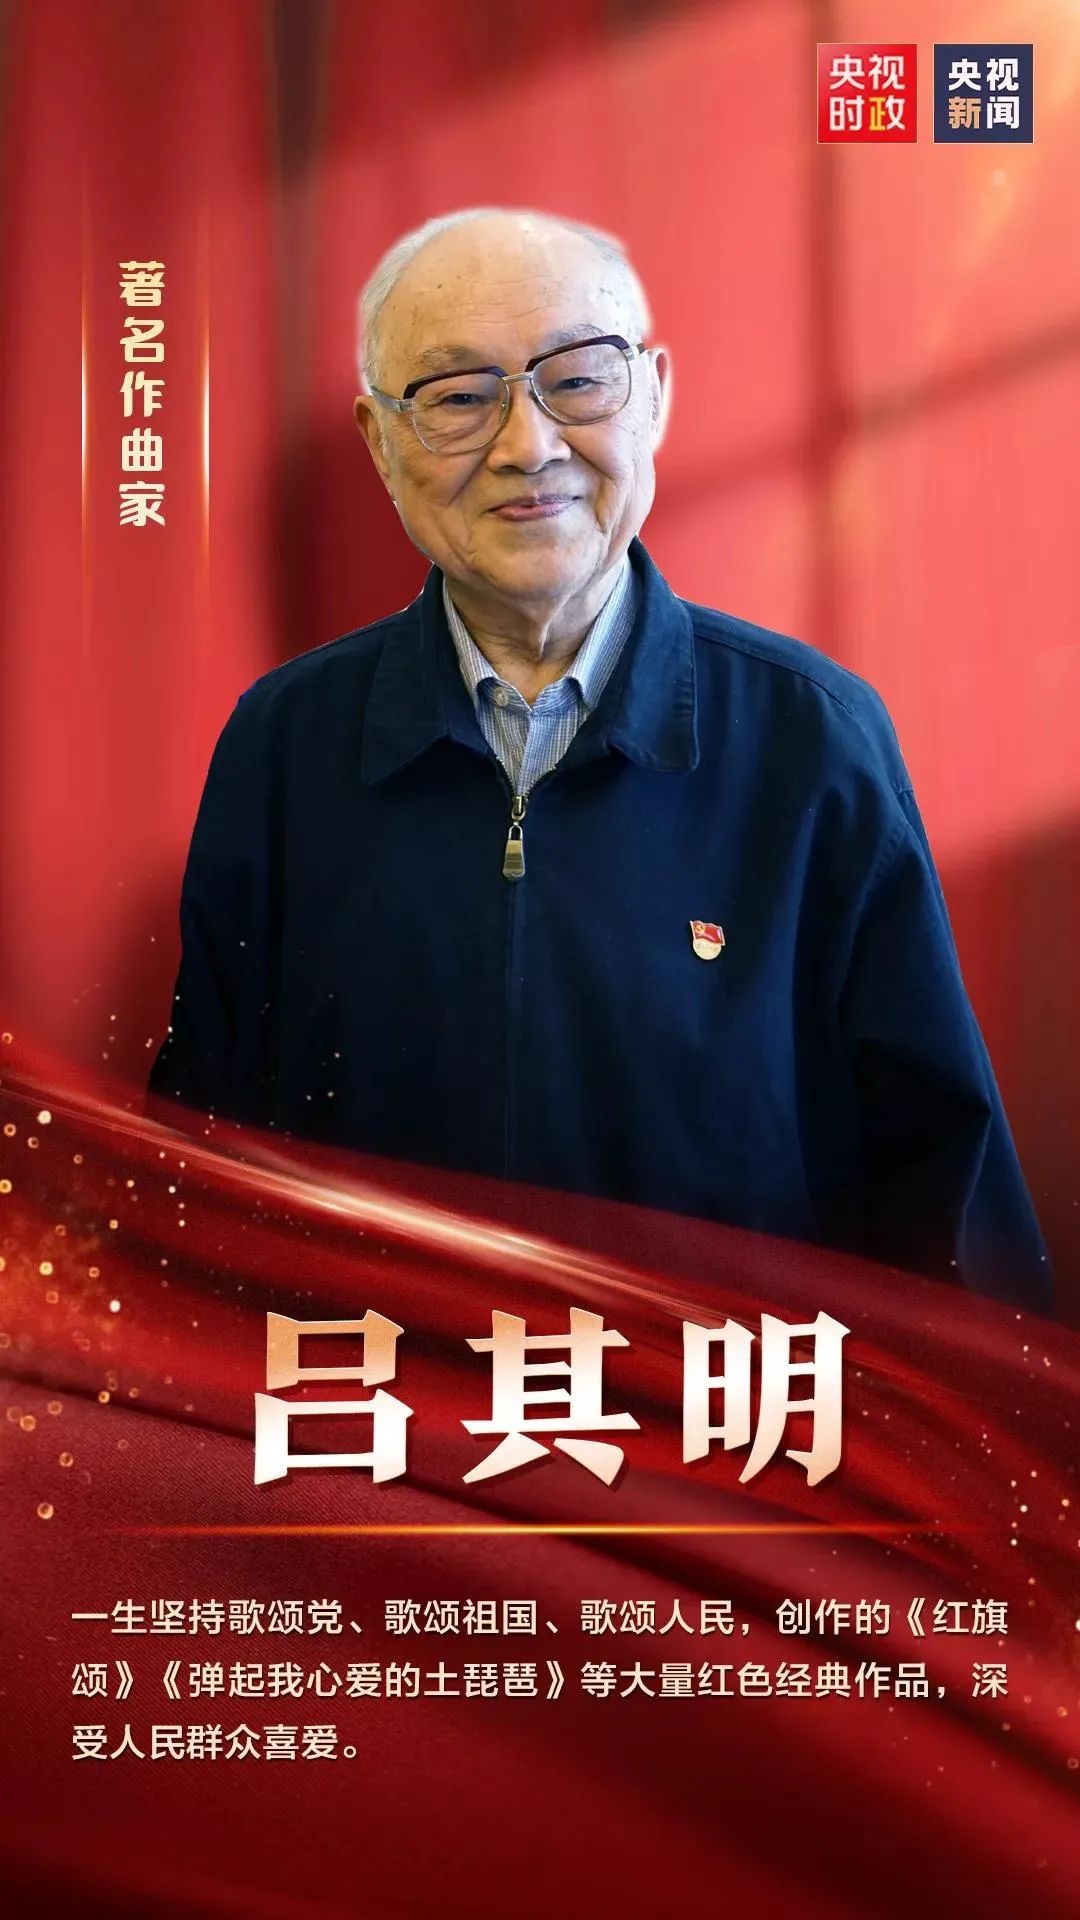 91岁高龄的"七一勋章"获得者吕其明,伴着自己创作的